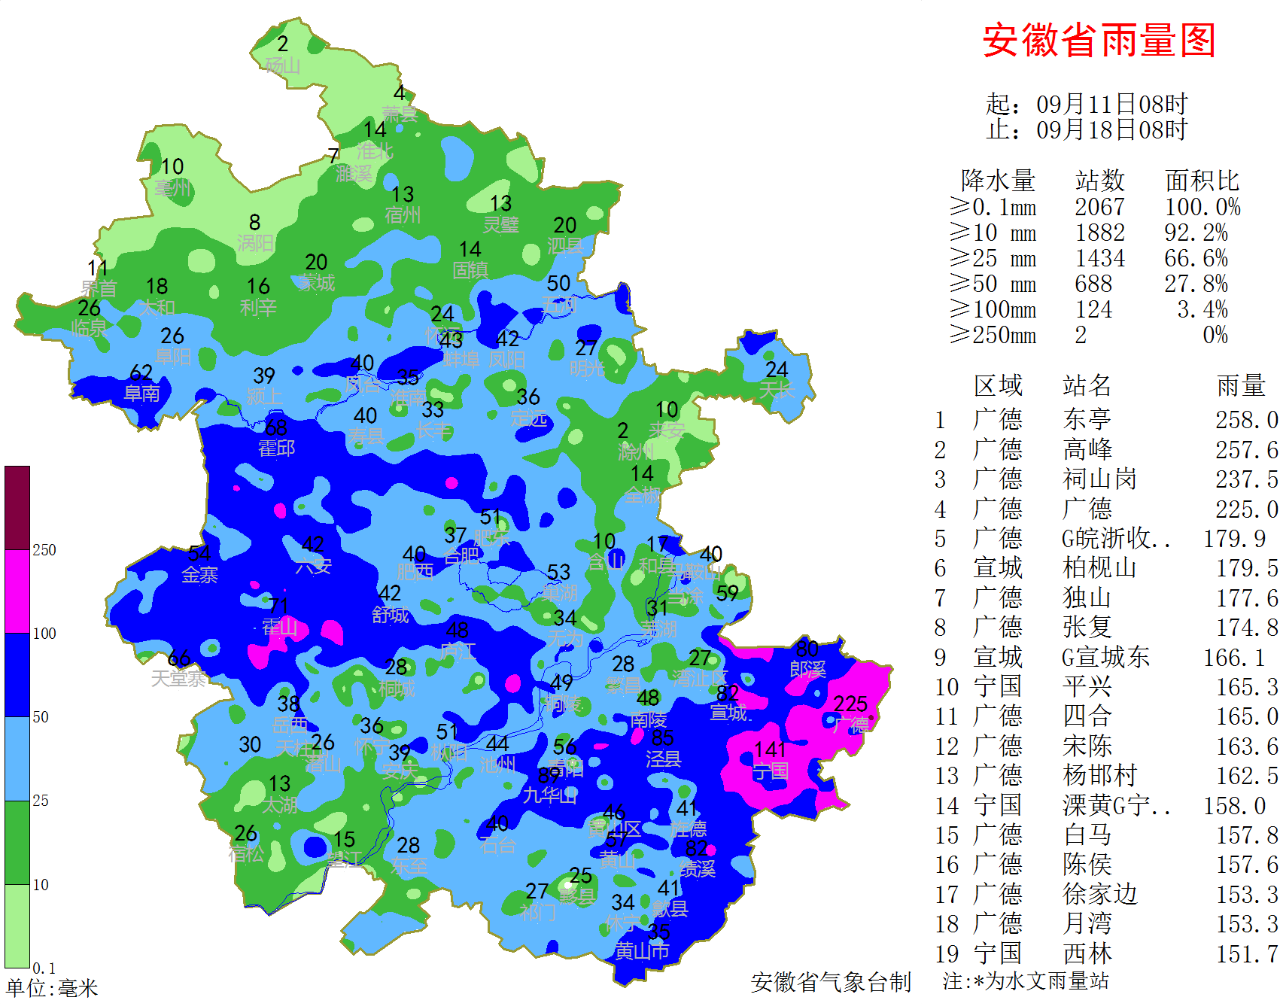 18日至21日安徽有明显降水 19日沿淮淮北有大暴雨